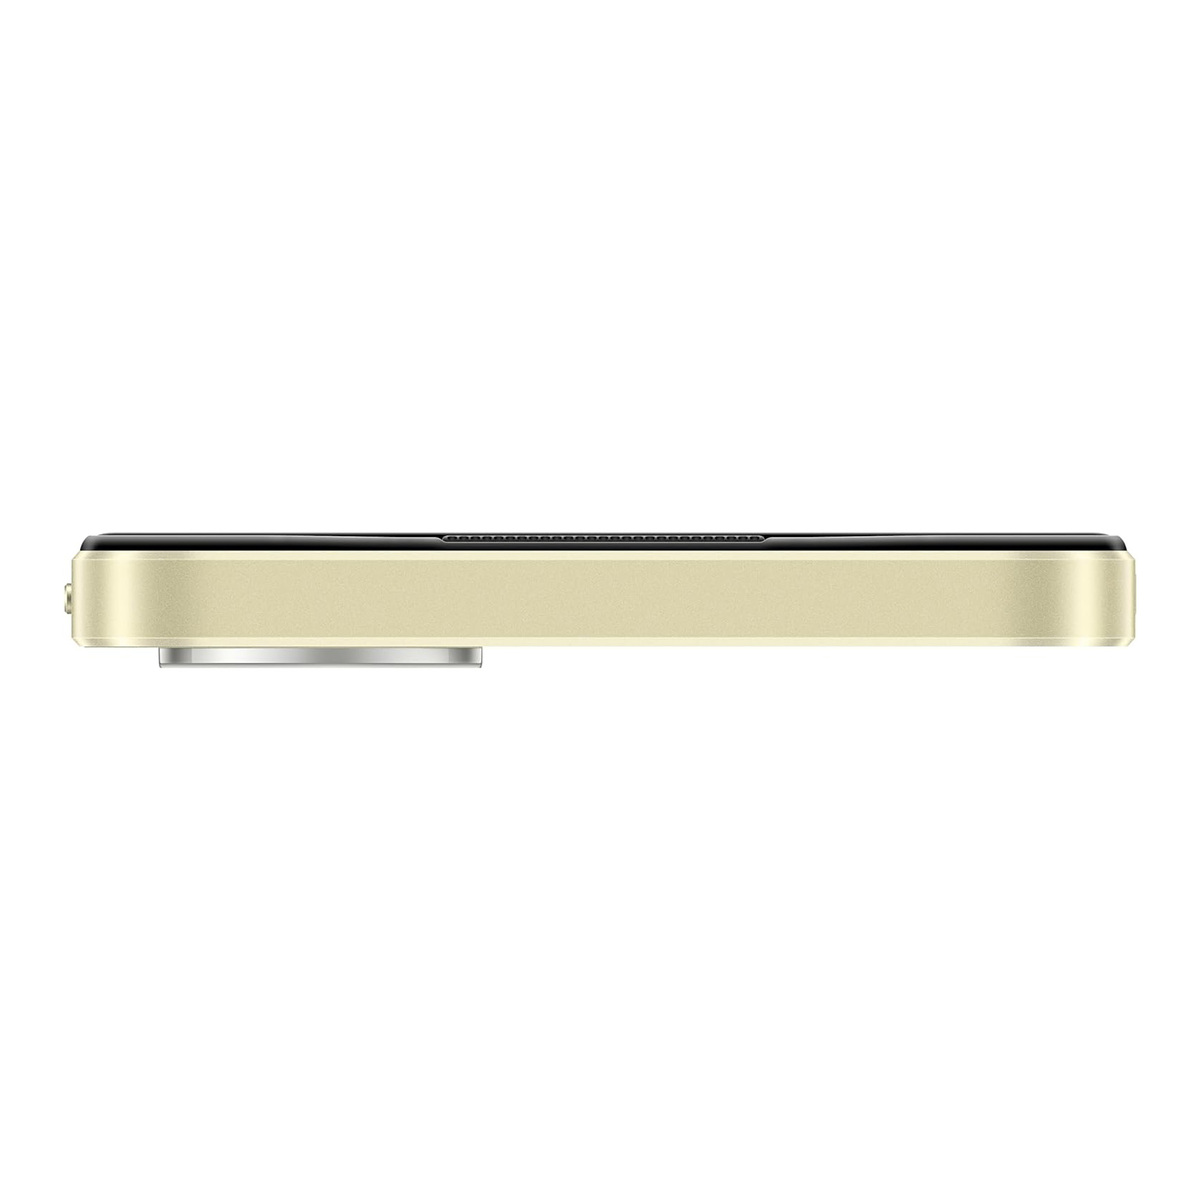 Oppo A38 4G Dual SIM Smartphone, 6 GB RAM, 128 GB Storage, Glowing Gold